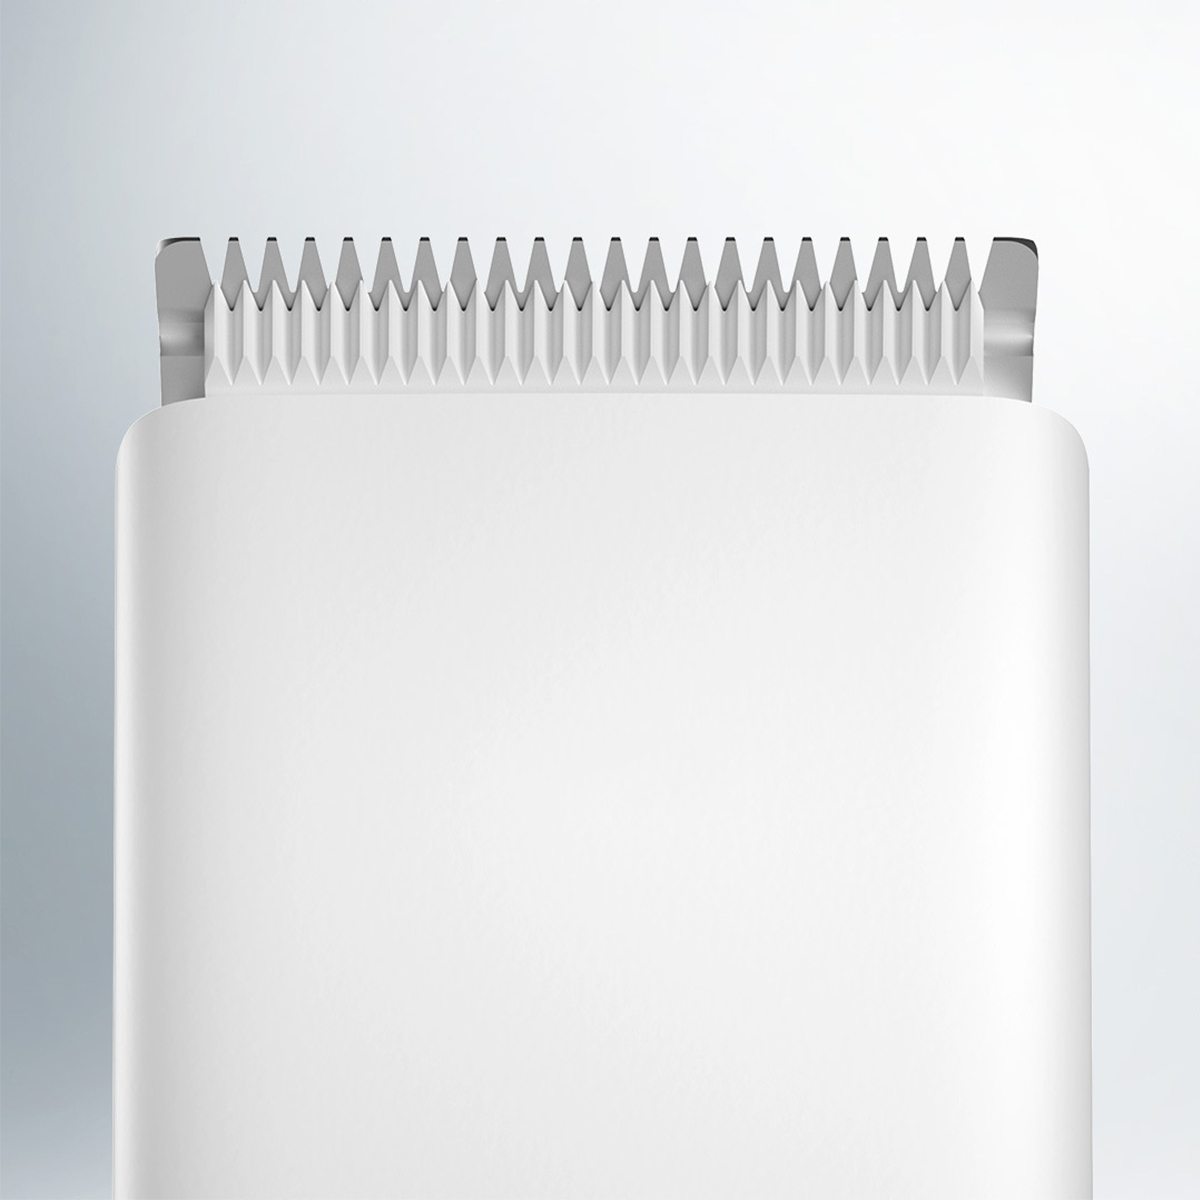 BRIGHTAKE Elektrische Haarschneidemaschine Haarglätter Geräuscharm Weiß Elektrische Haarschneidemaschine